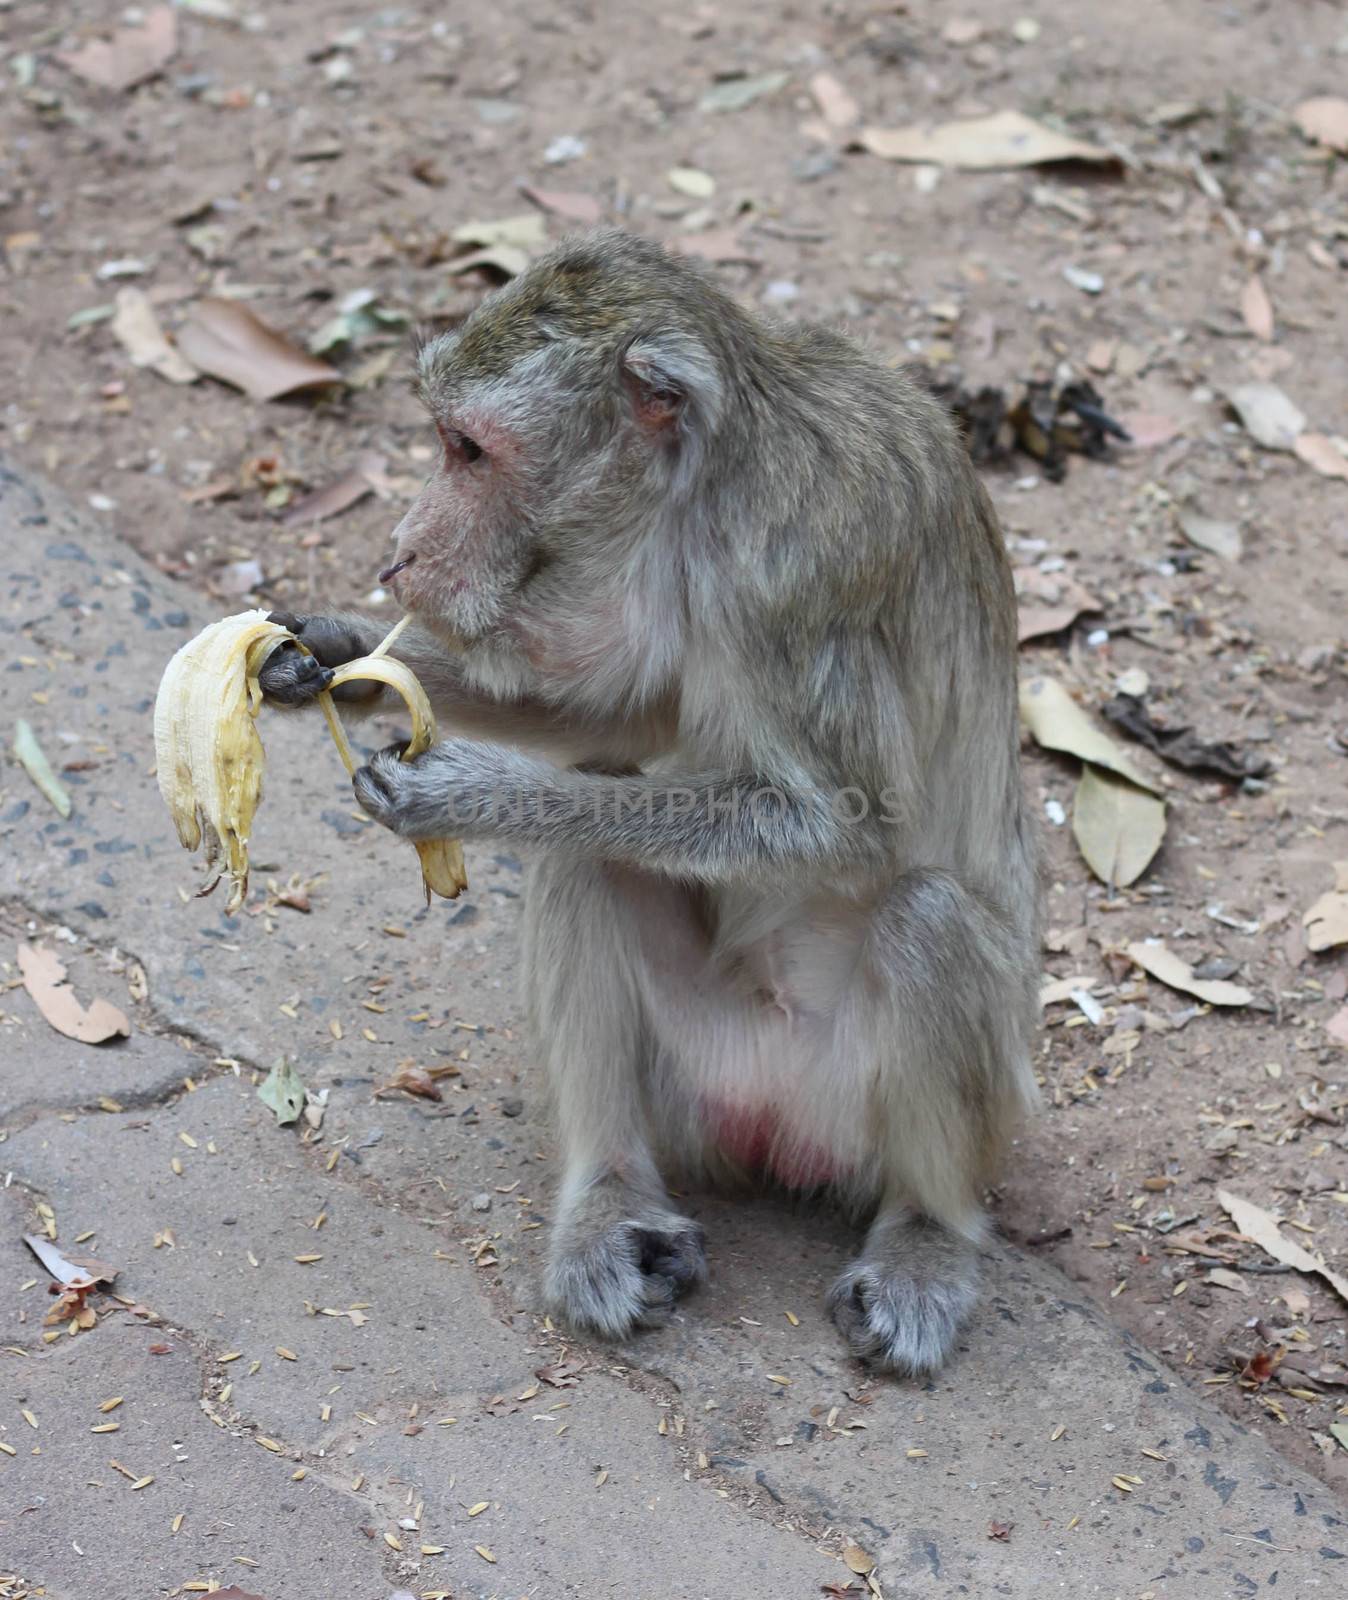 monkeys eat bananas